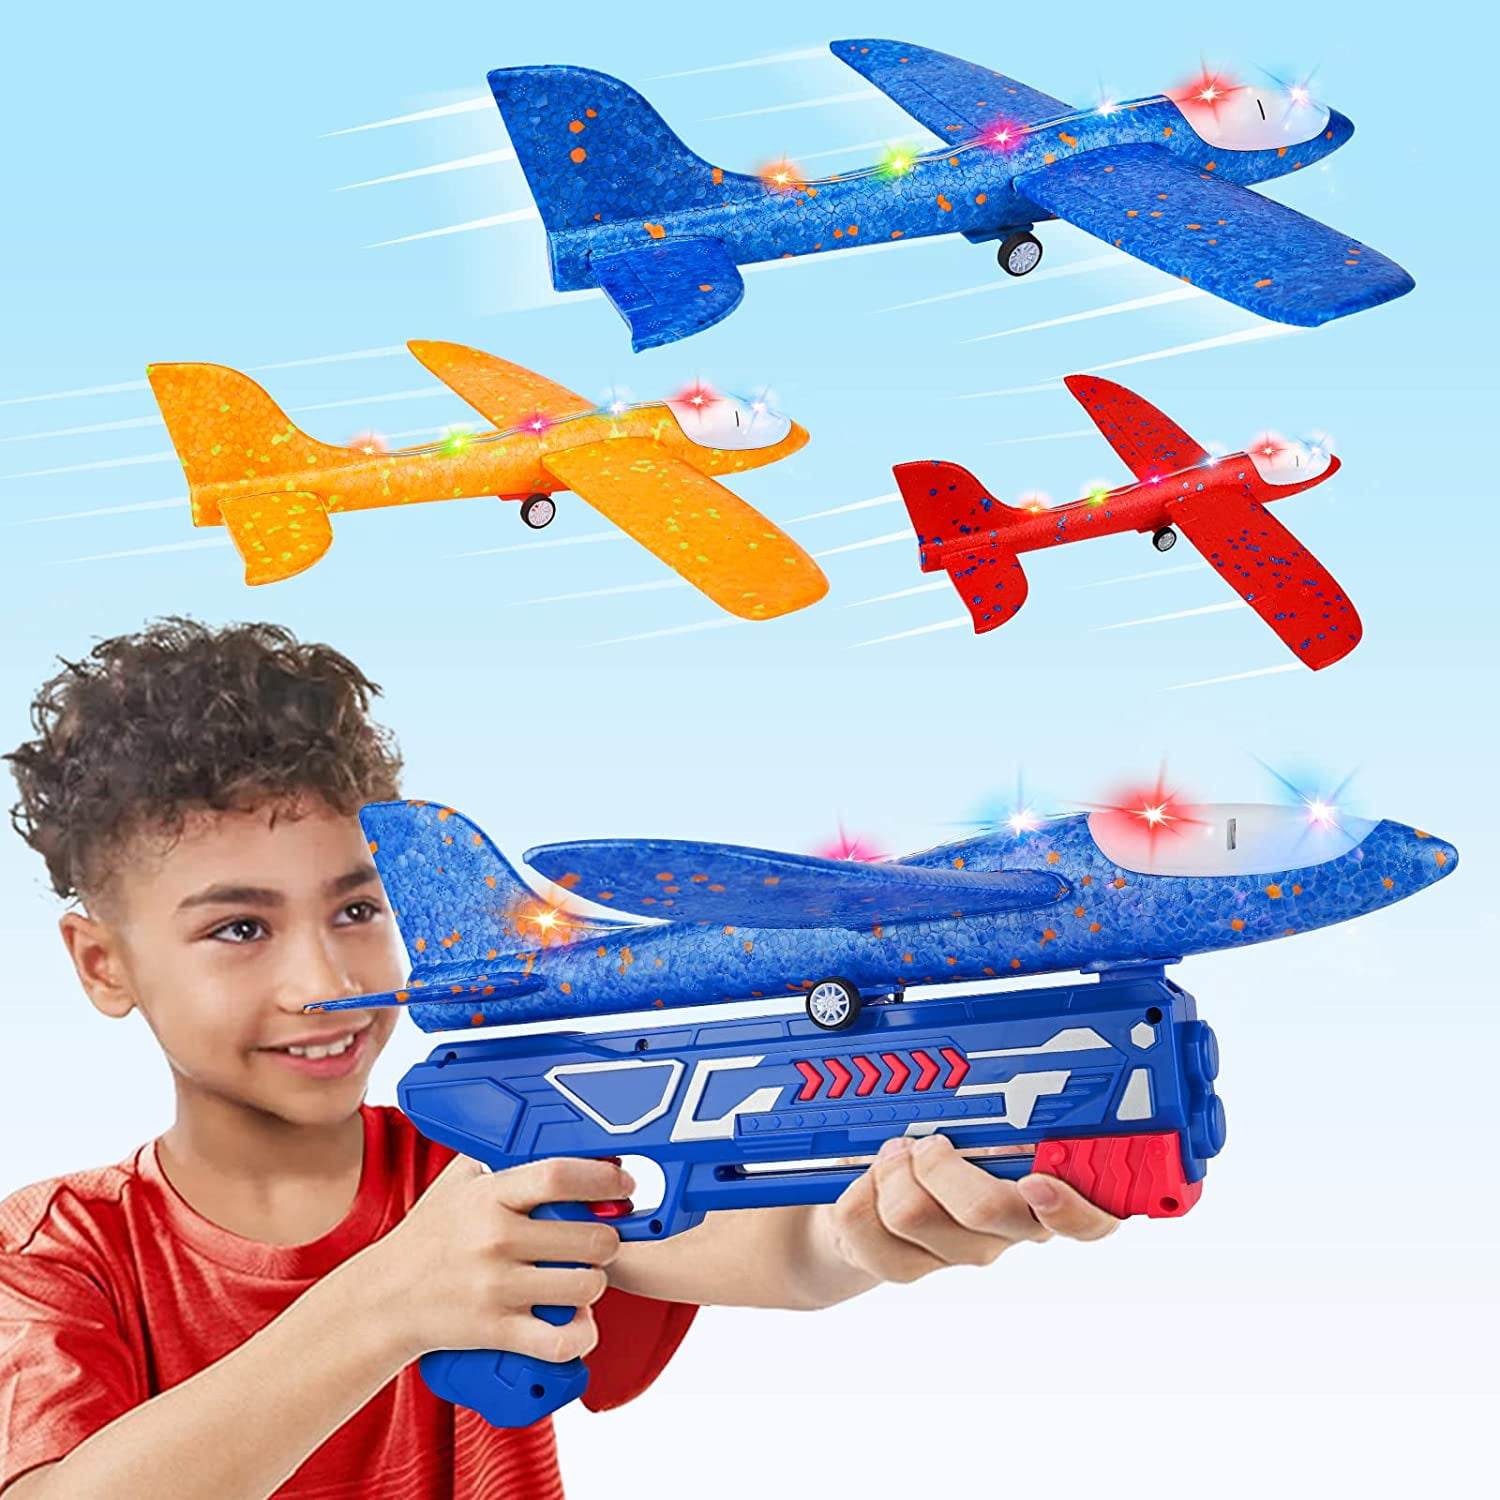 Летающие игрушки. Киндер летающая игрушка. Игрушка летает и едет. Lucky plane игрушка.